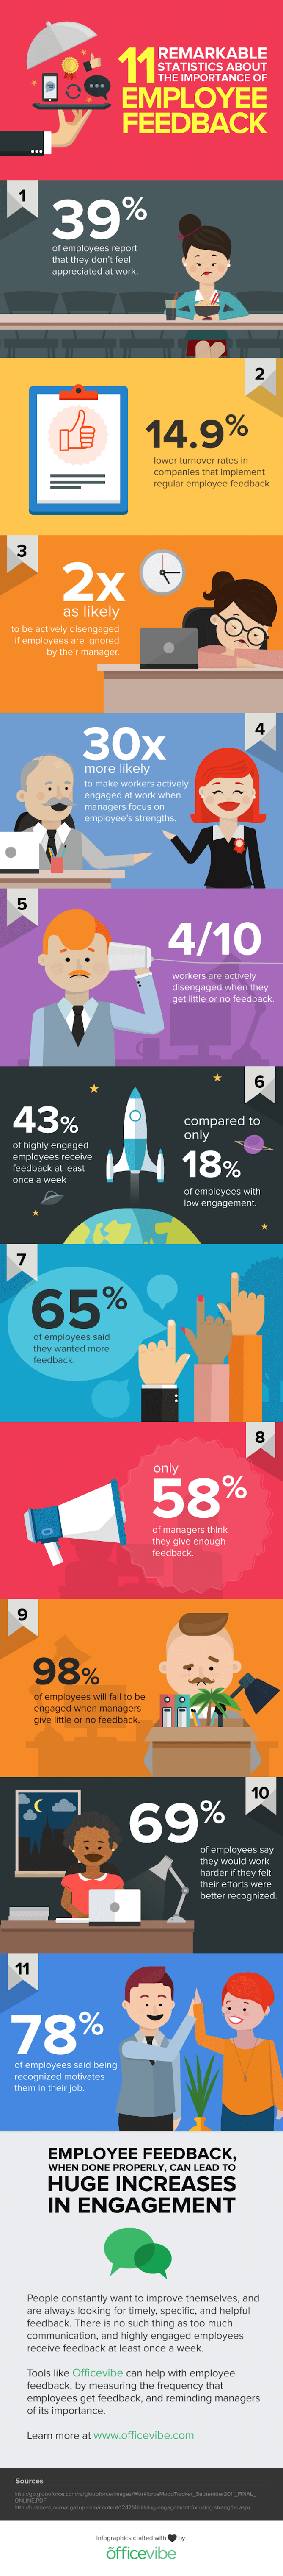 employee-feedback-infographic